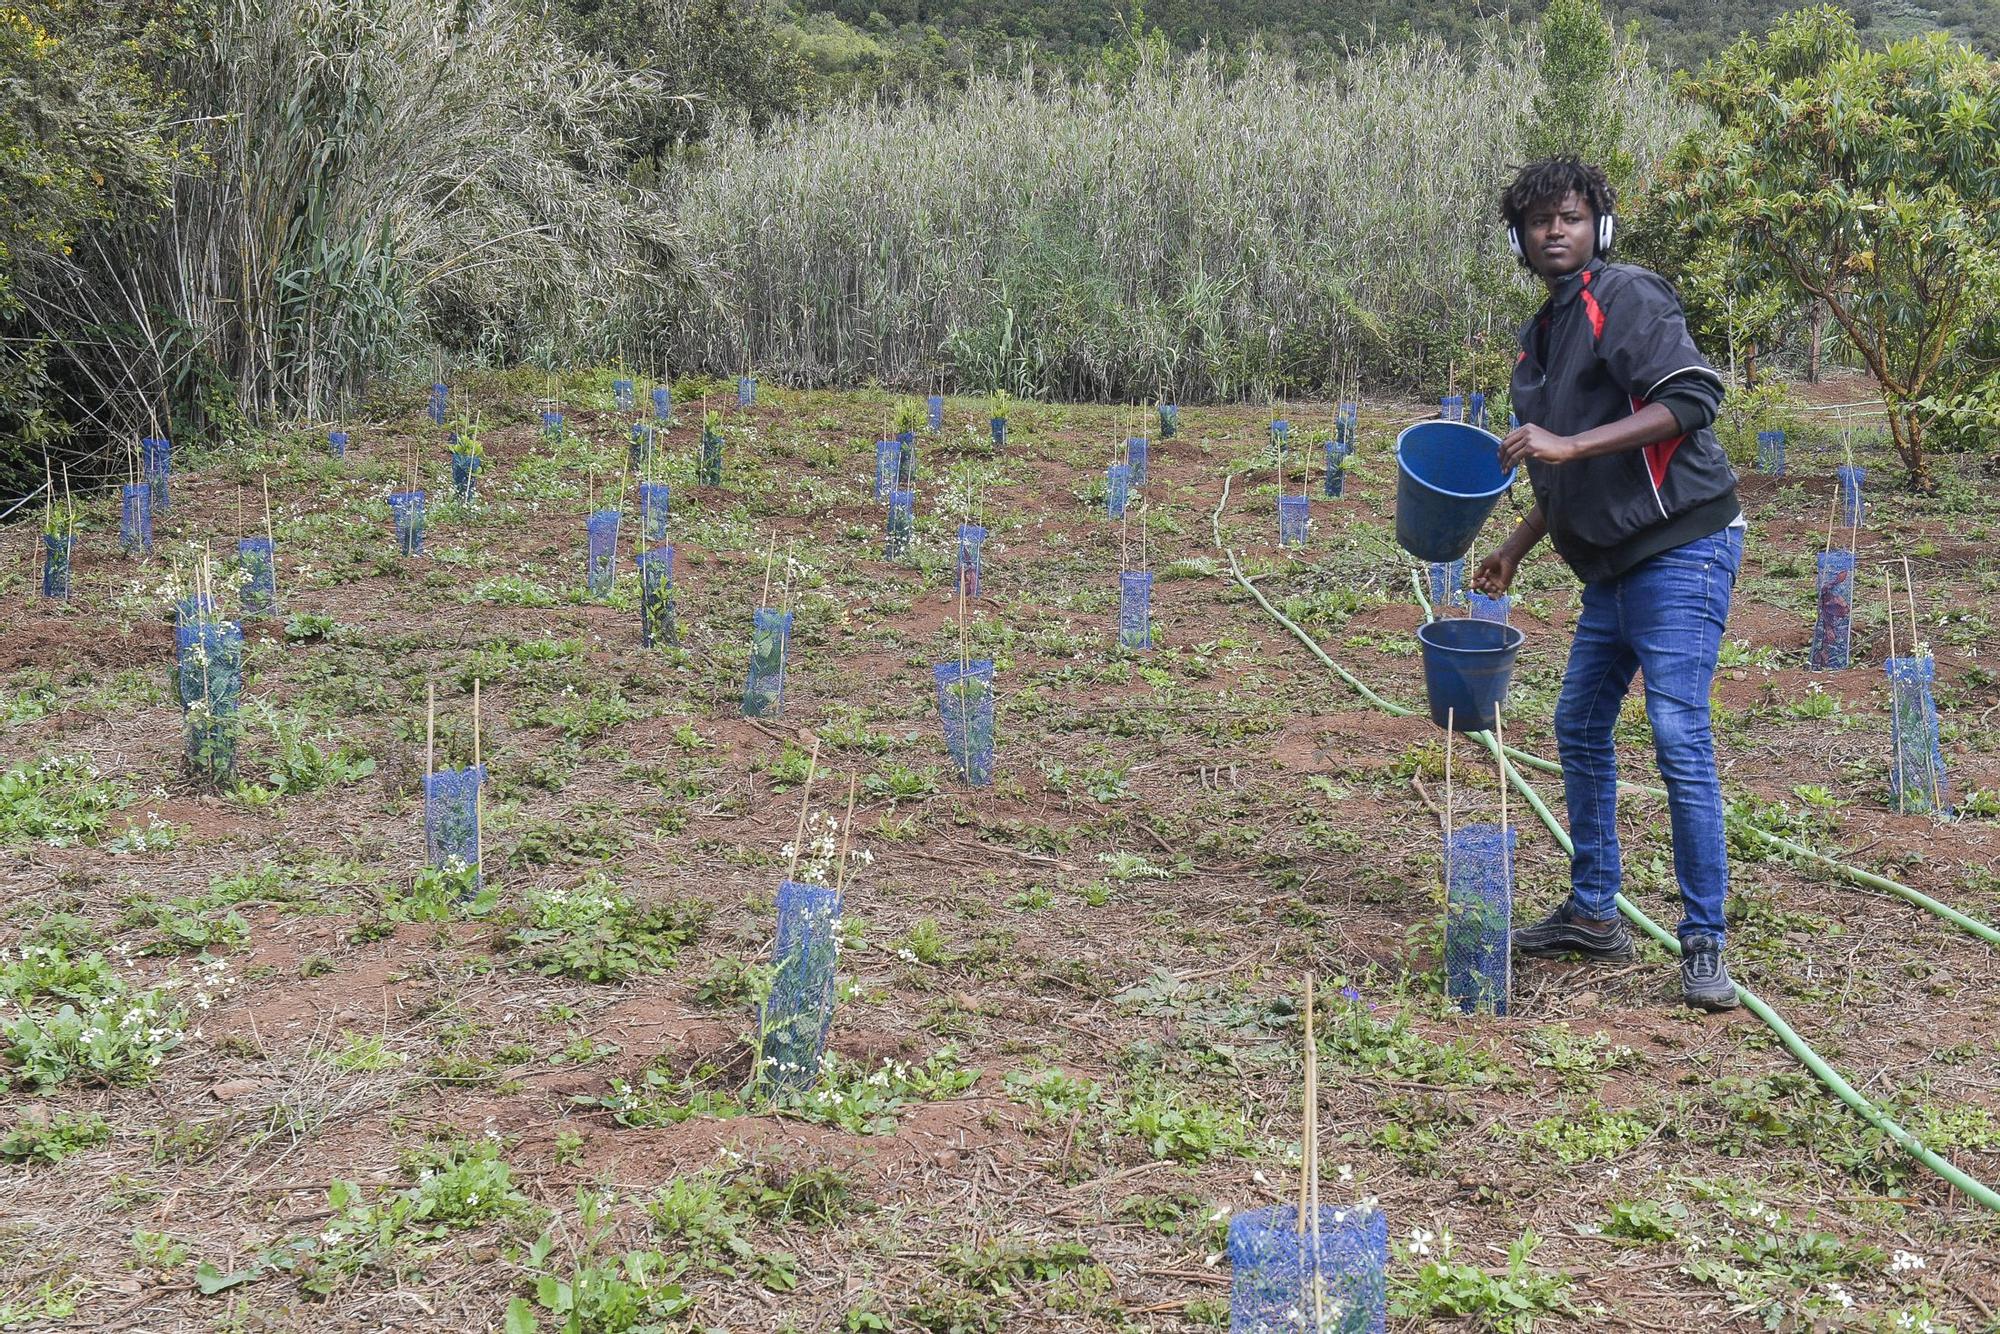 Proyecto “Sentir la Isleta: convivir para entender” en el que estudiantes del IES La Isleta y migrantes plantan árboles en Osorio junto a la Fundación Foresta.